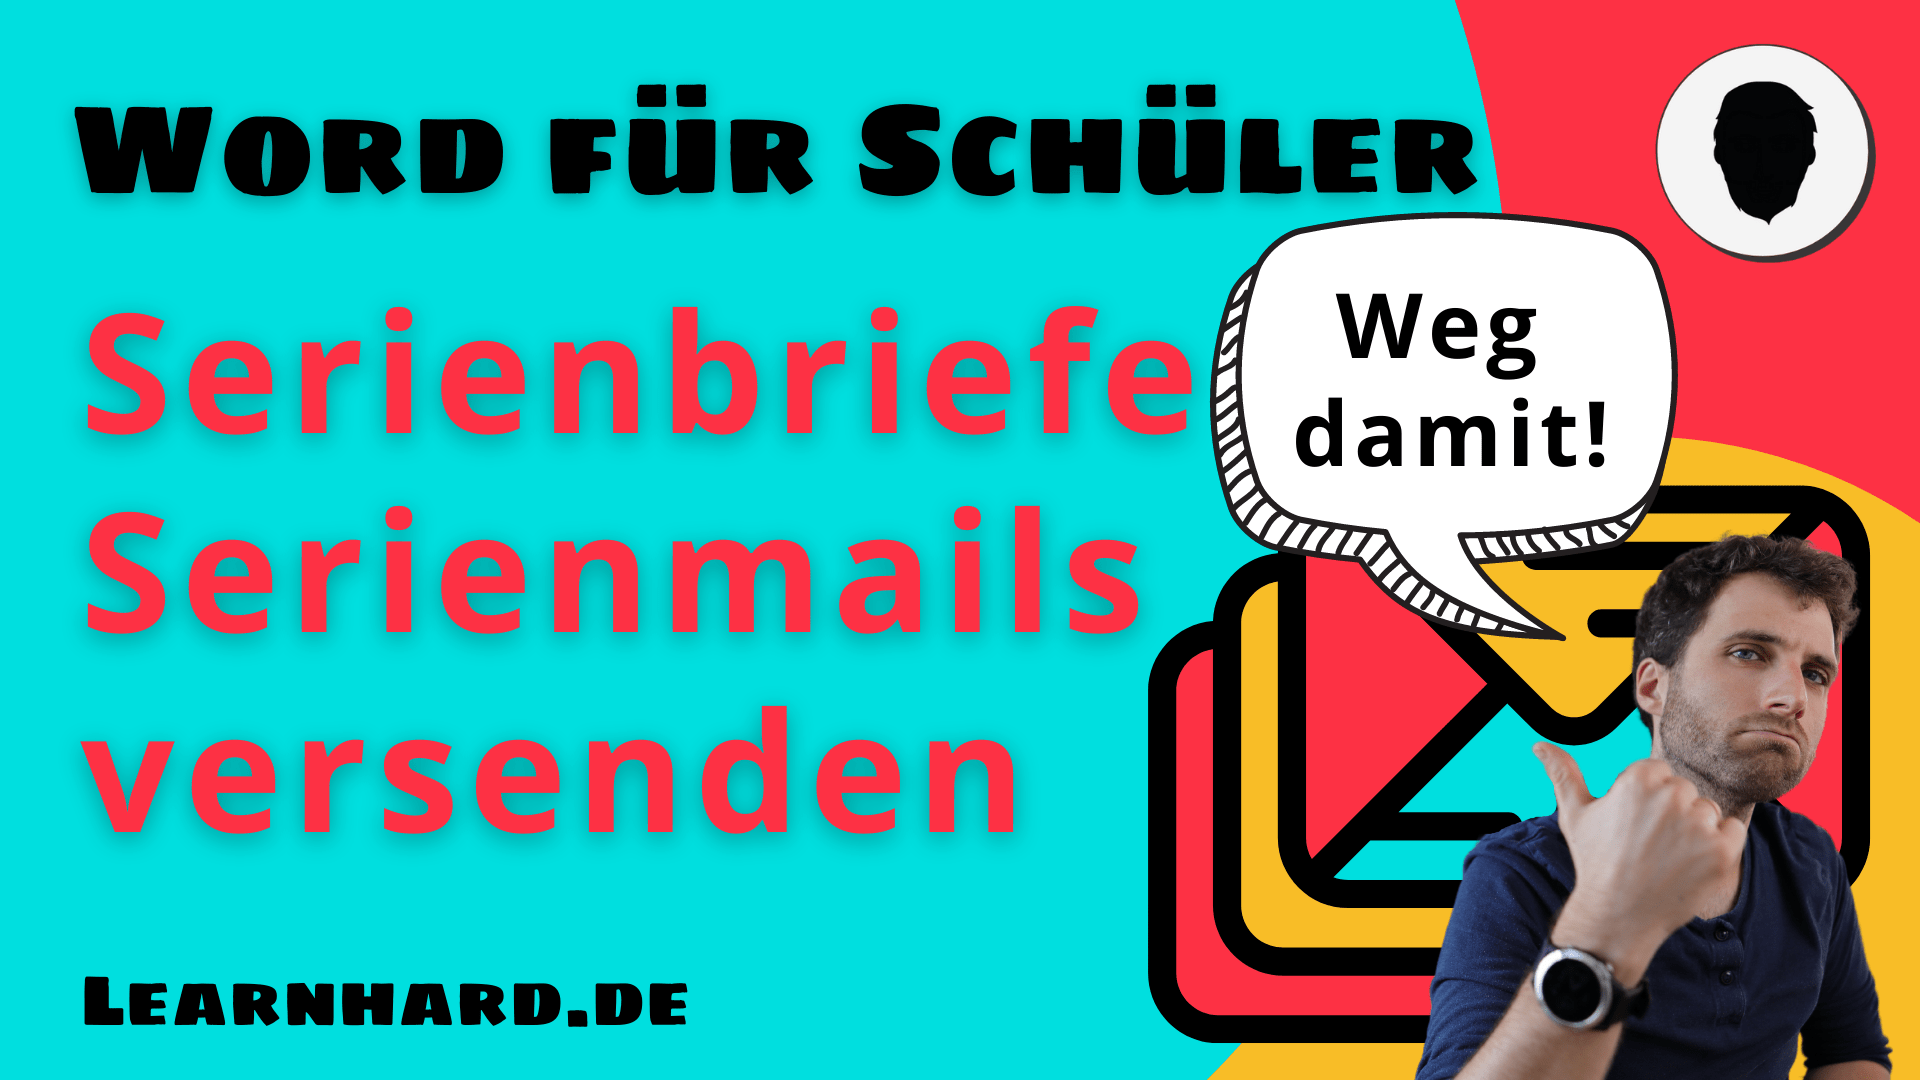 You are currently viewing Word für Schüler erklärt: Serienbriefe / Serienmails verschicken